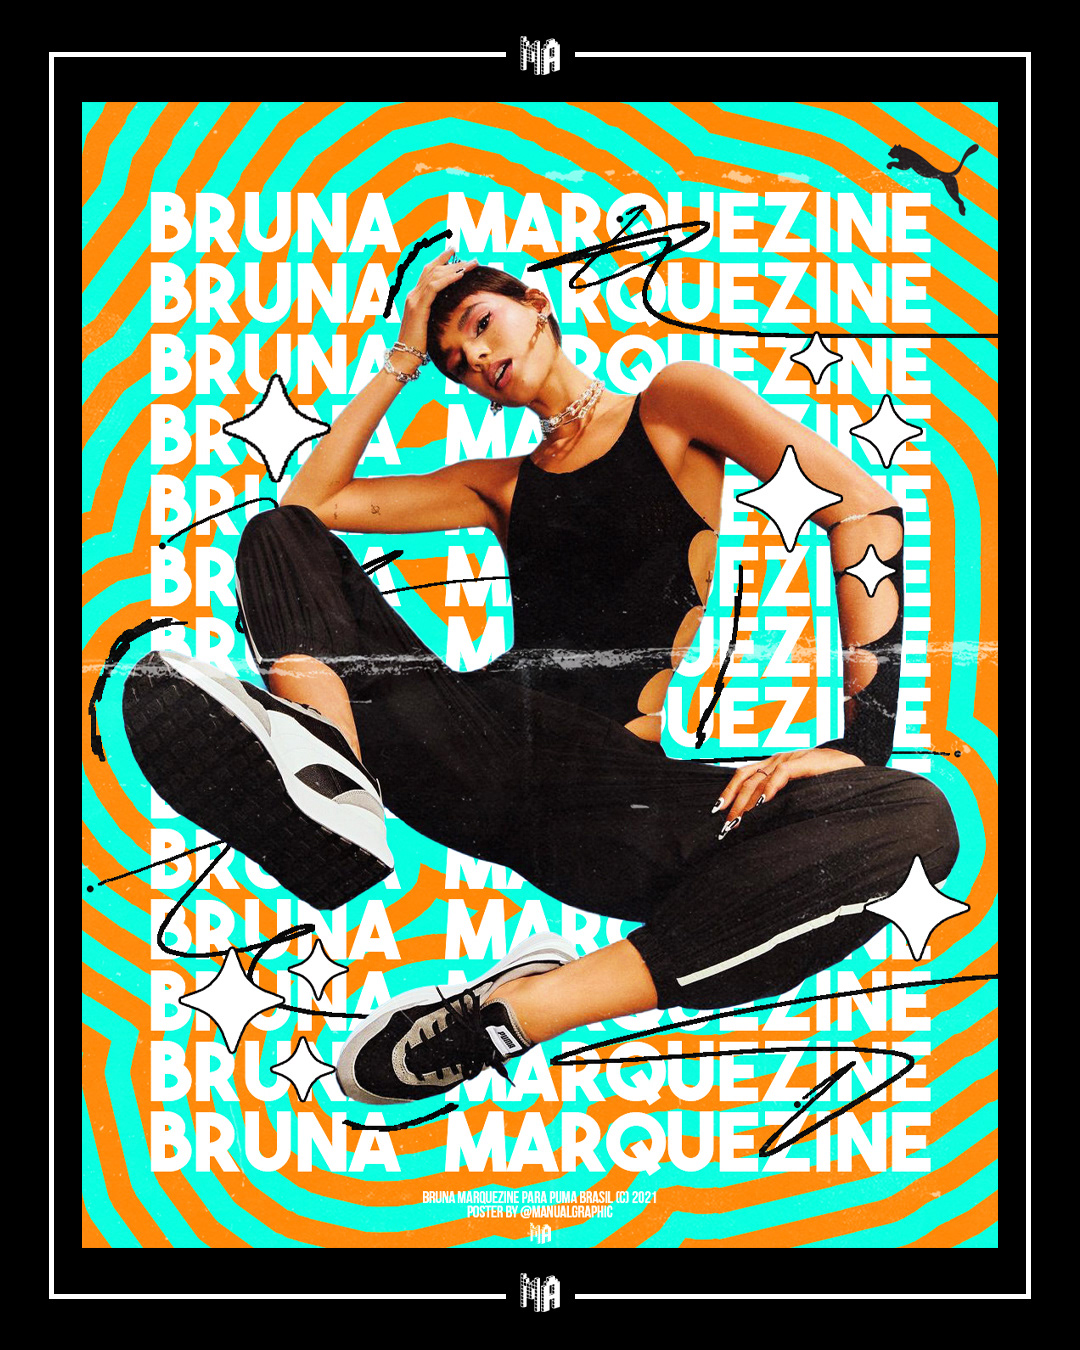 art bruna Bruna Marquezine MARQUEZINE poster poster art